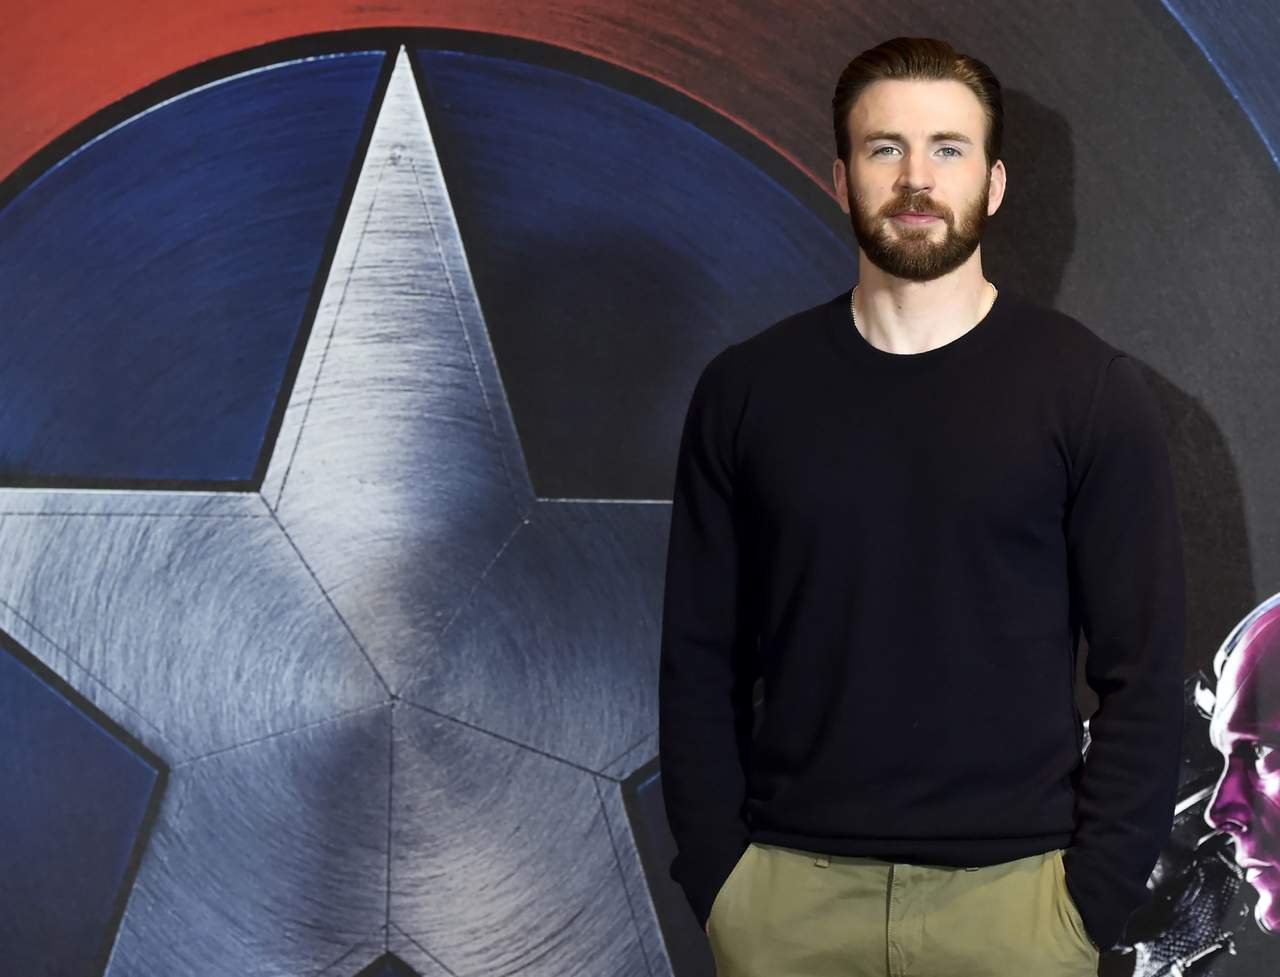 ¿Chris Evans volvería a interpretar al Capitán América?